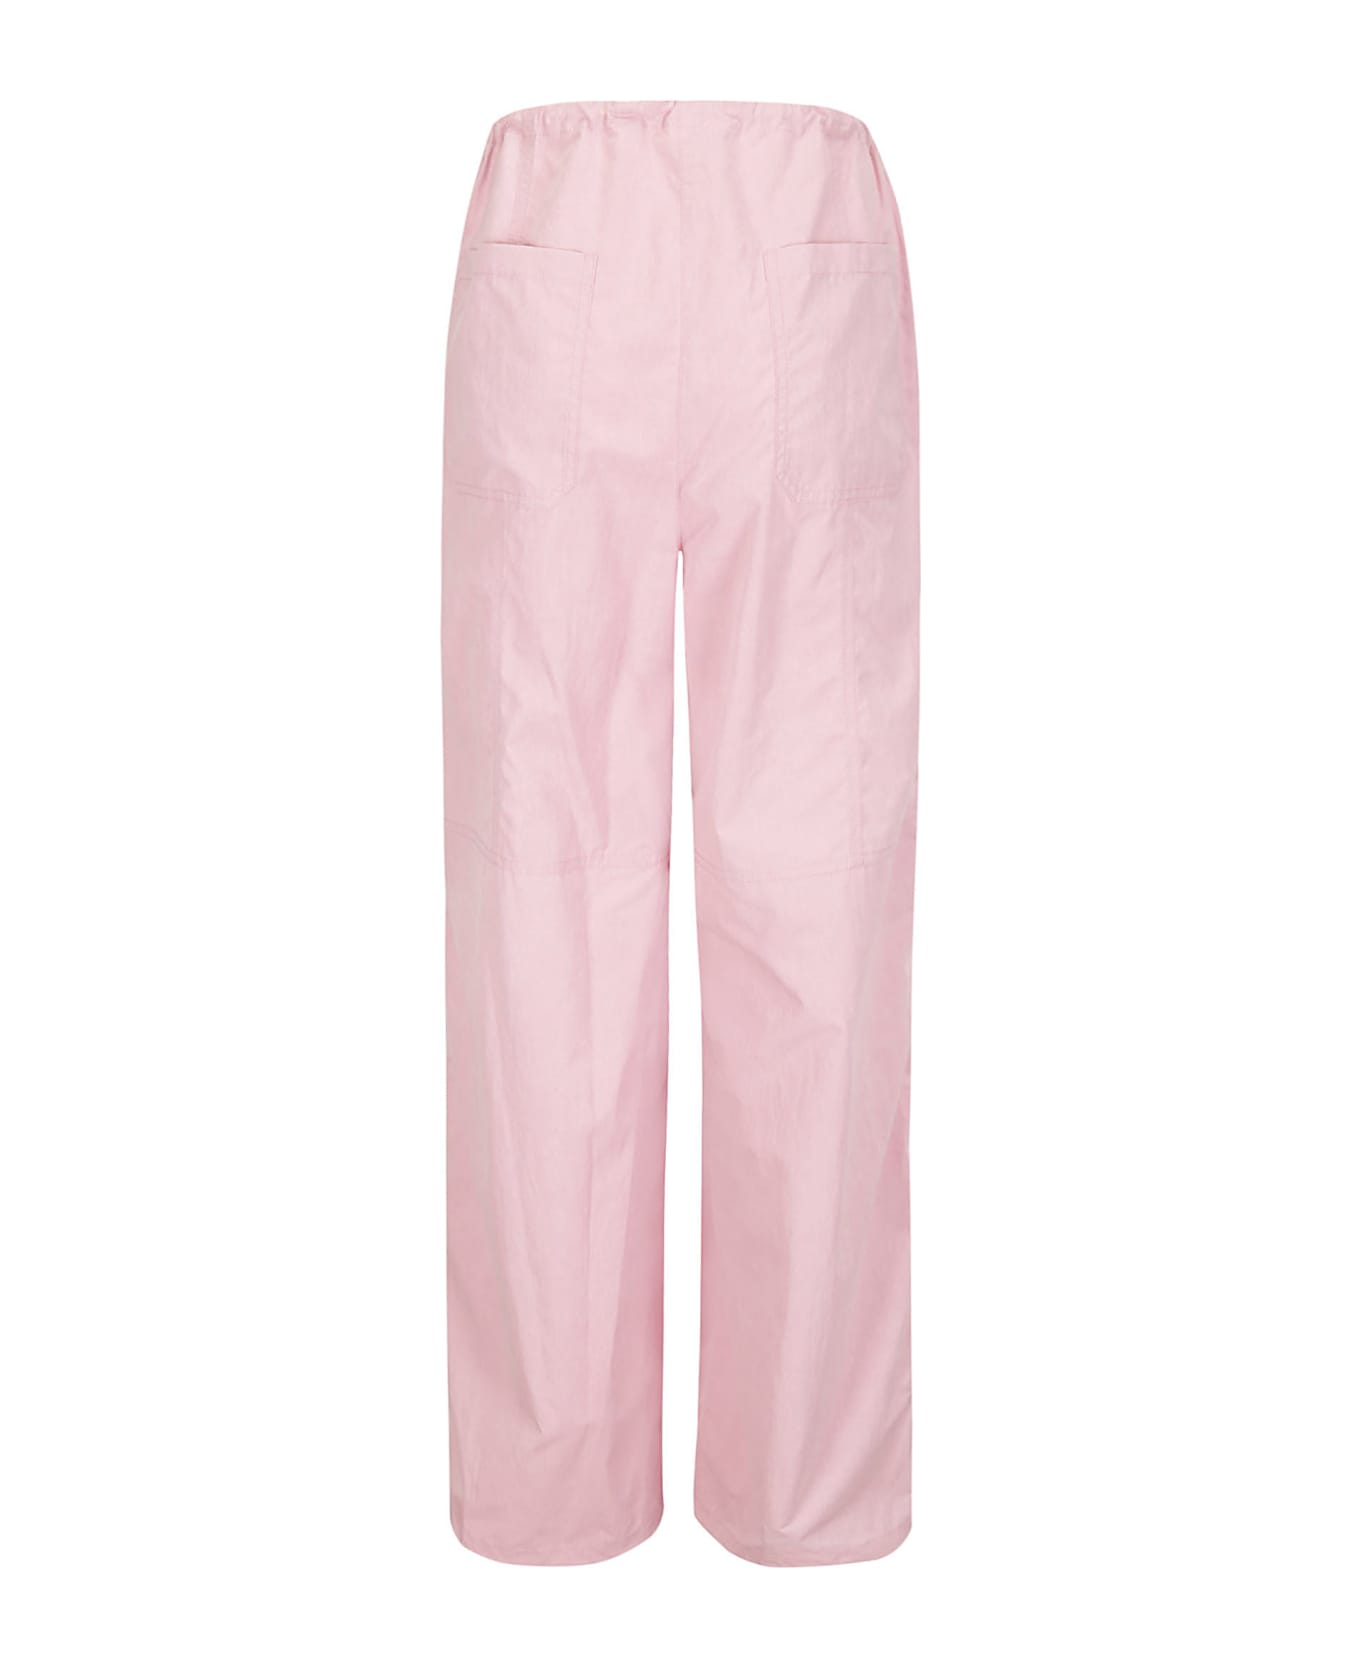 Juun.J Ice Pink Utility Pants - PINK ボトムス